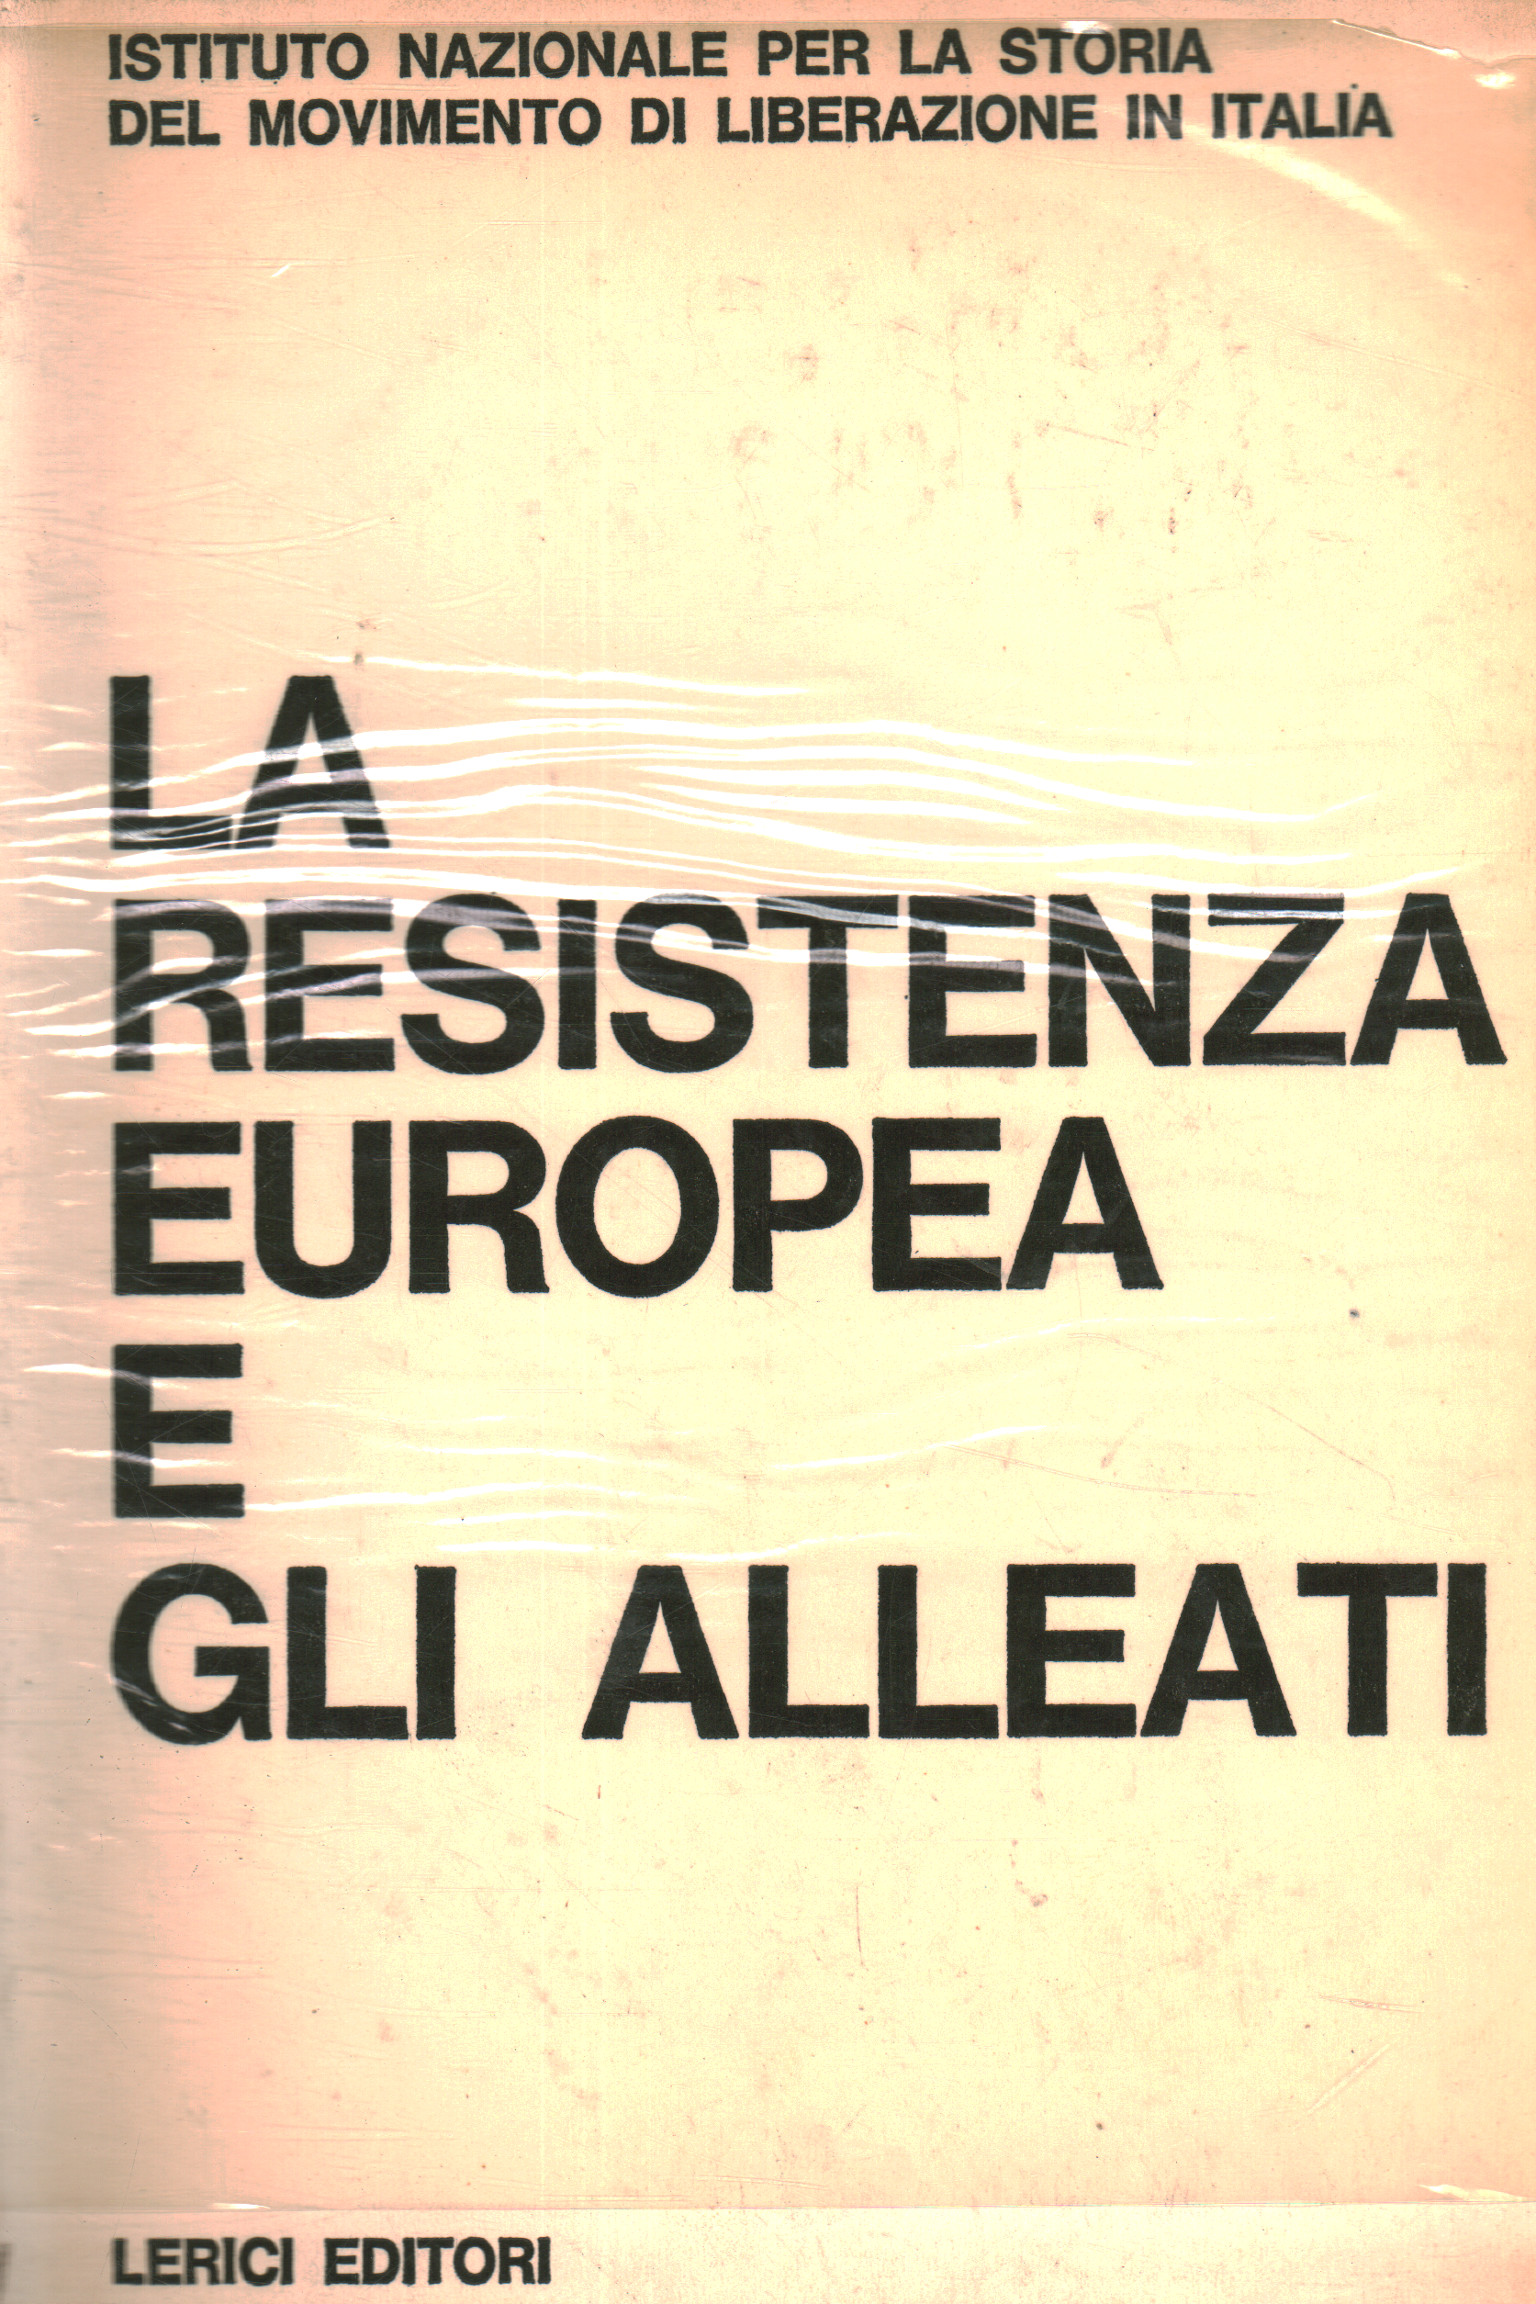 La Resistenza europea e gli Alleati